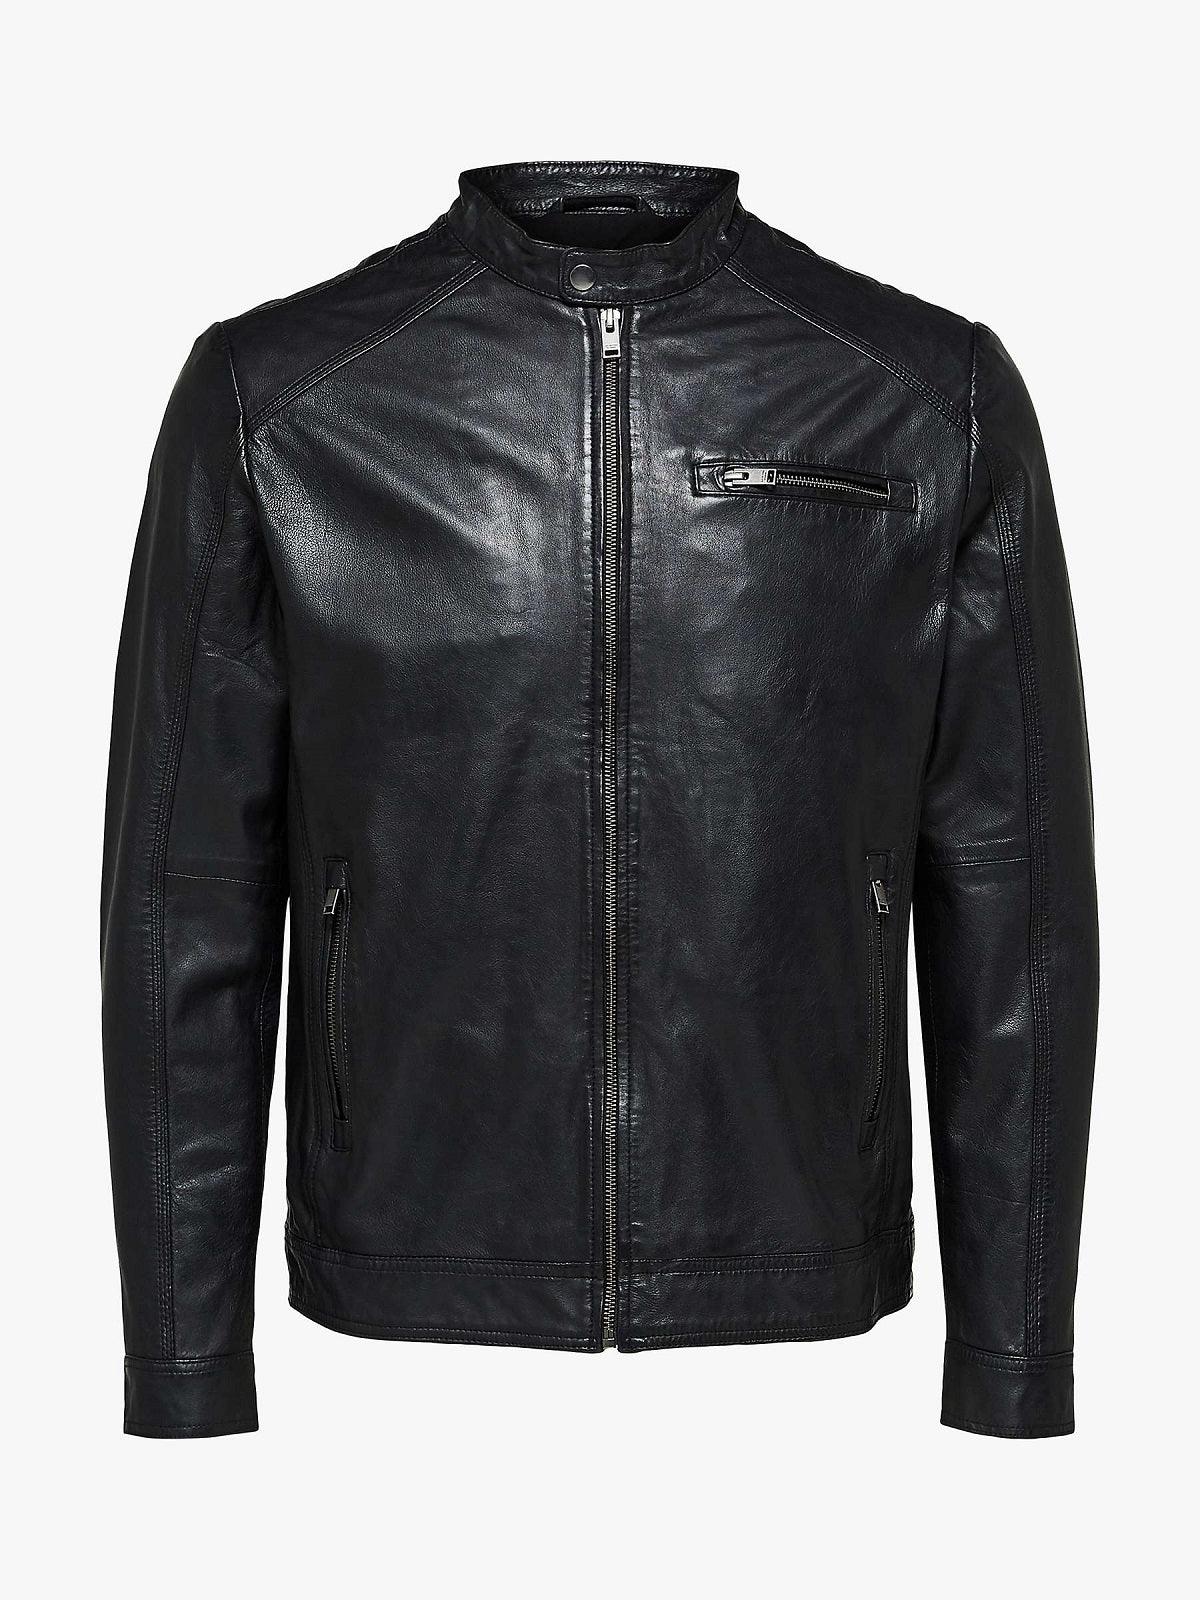 Black Leather Jacket For Men